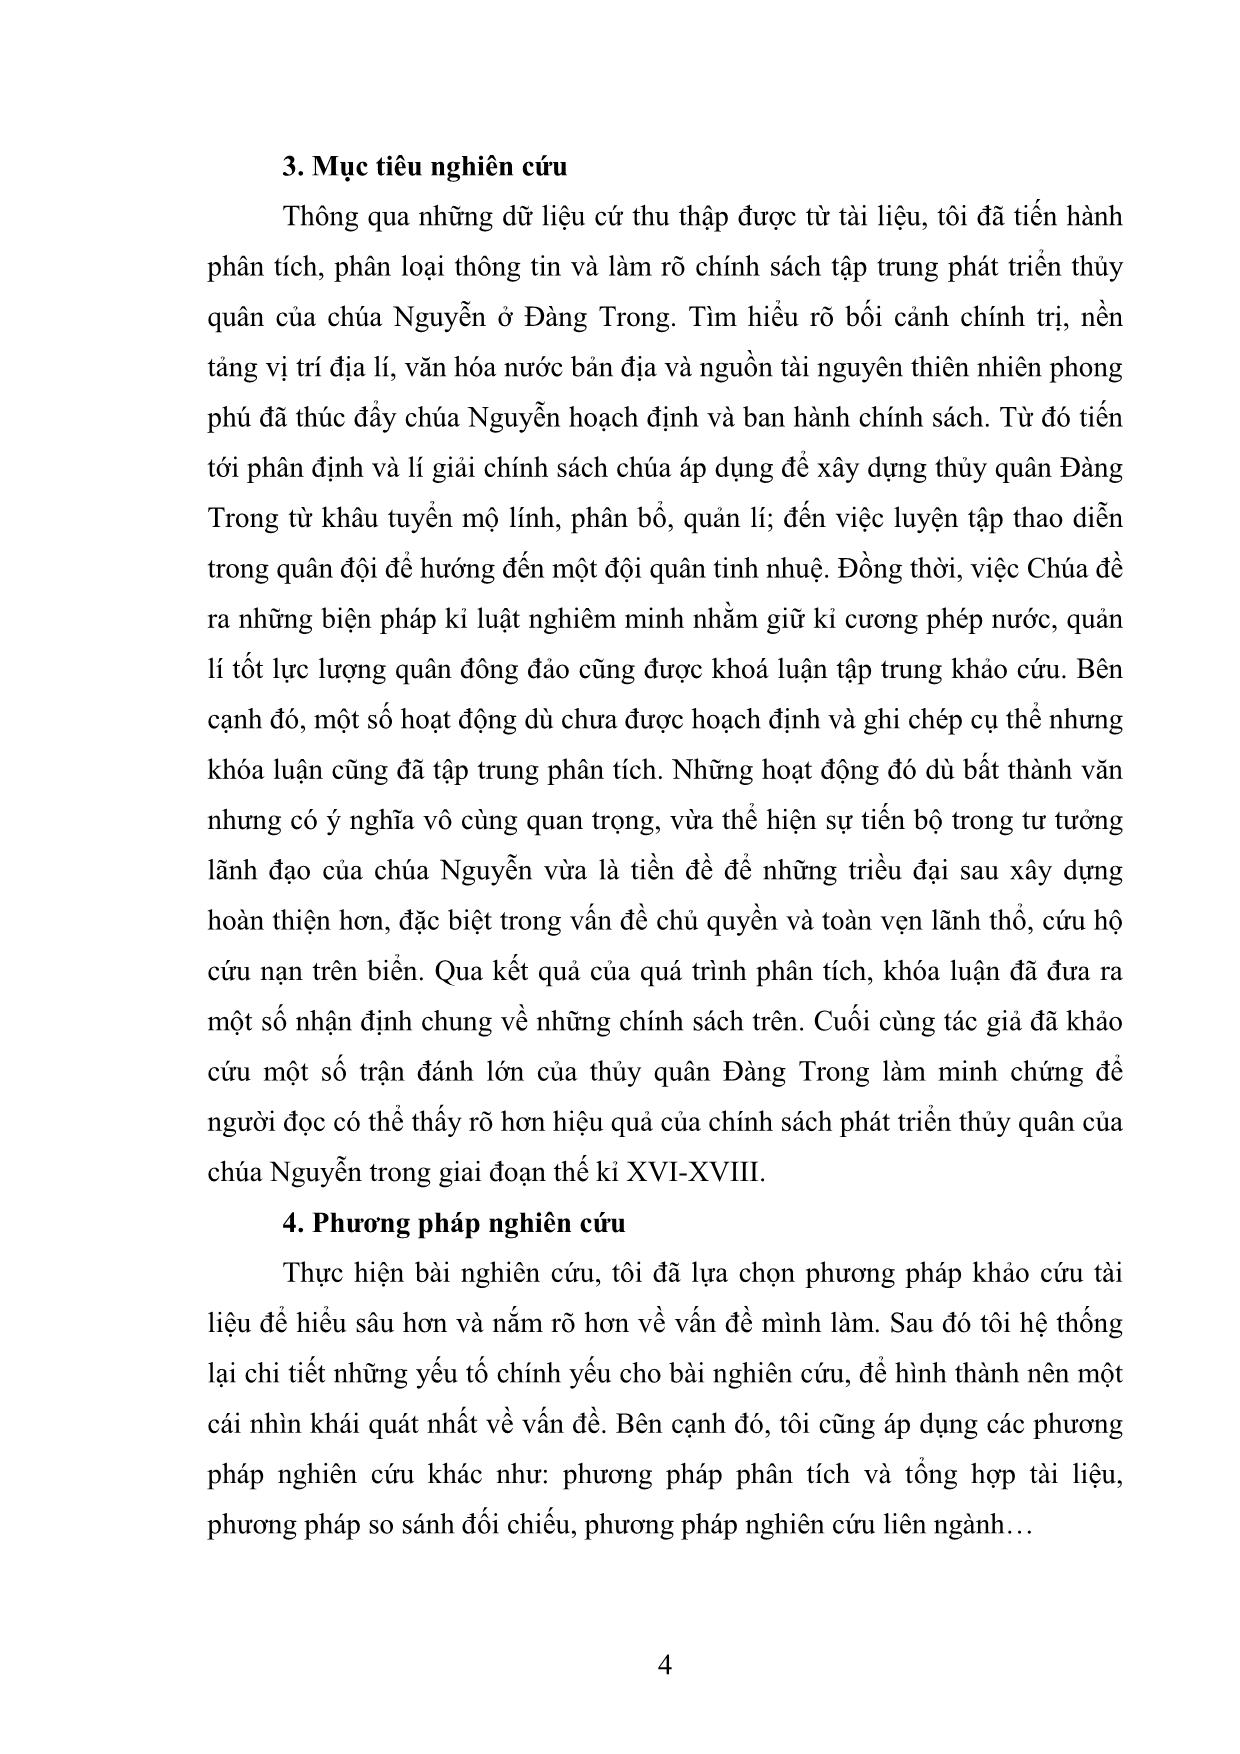 Khóa luận Chính sách phát triển thủy quân của các chúa Nguyễn ở Đàng Trong thế kỉ XVI-XVIII trang 8